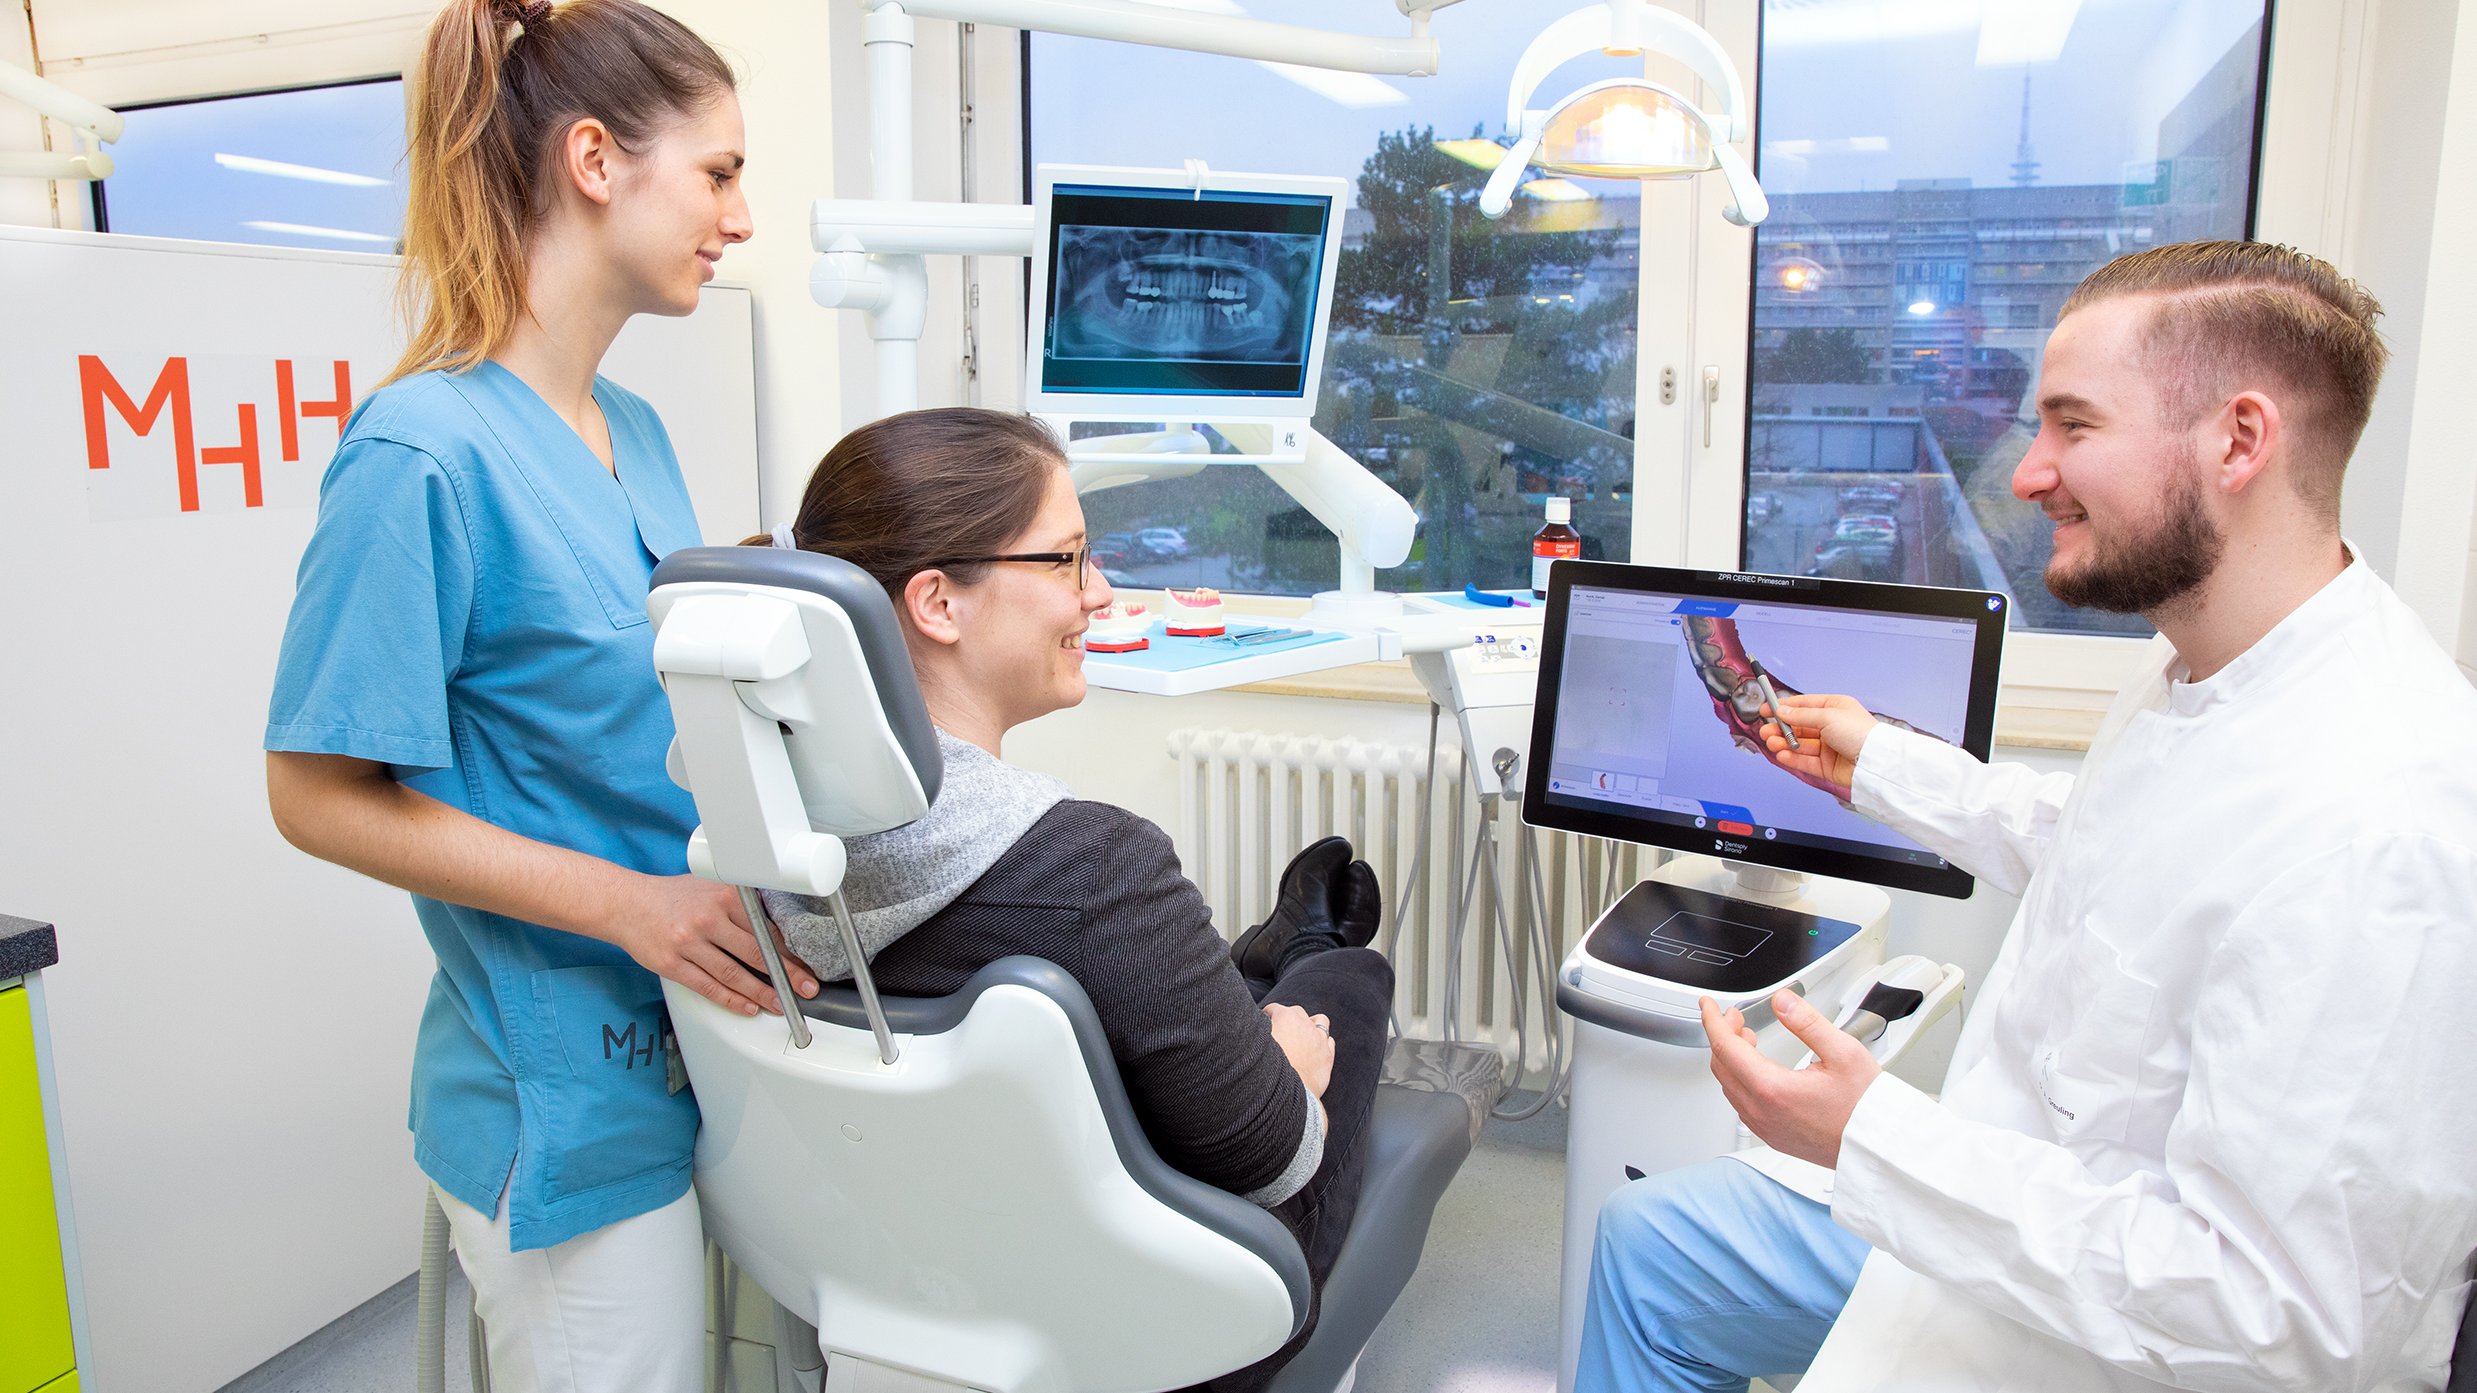 Studierende in blau-weißer Klinikkleidung steht um den Behandlungsstuhl herum, auf dem ein Patient sitzt. Beide blicken zum Zahnarzt, der in weißem Kittel gekleidet auf der rechten Seite sitzt und auf einem Gerät ein digitales Bild erklärt.